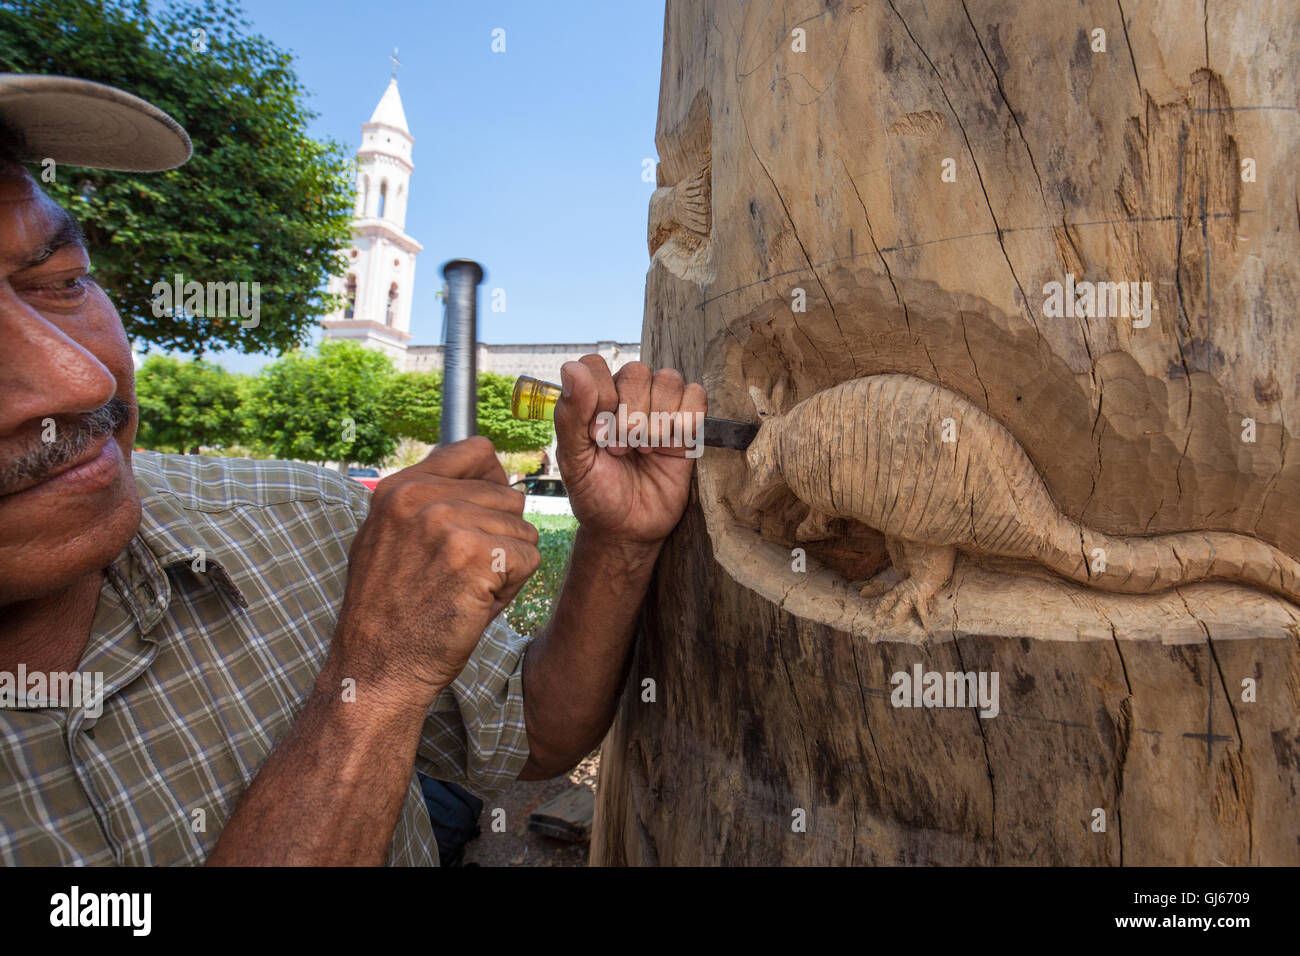 Jésus Artisan Ramos Cota travaille sur une sculpture dans la place d'El Fuerte, Sinaloa, Mexique. Banque D'Images